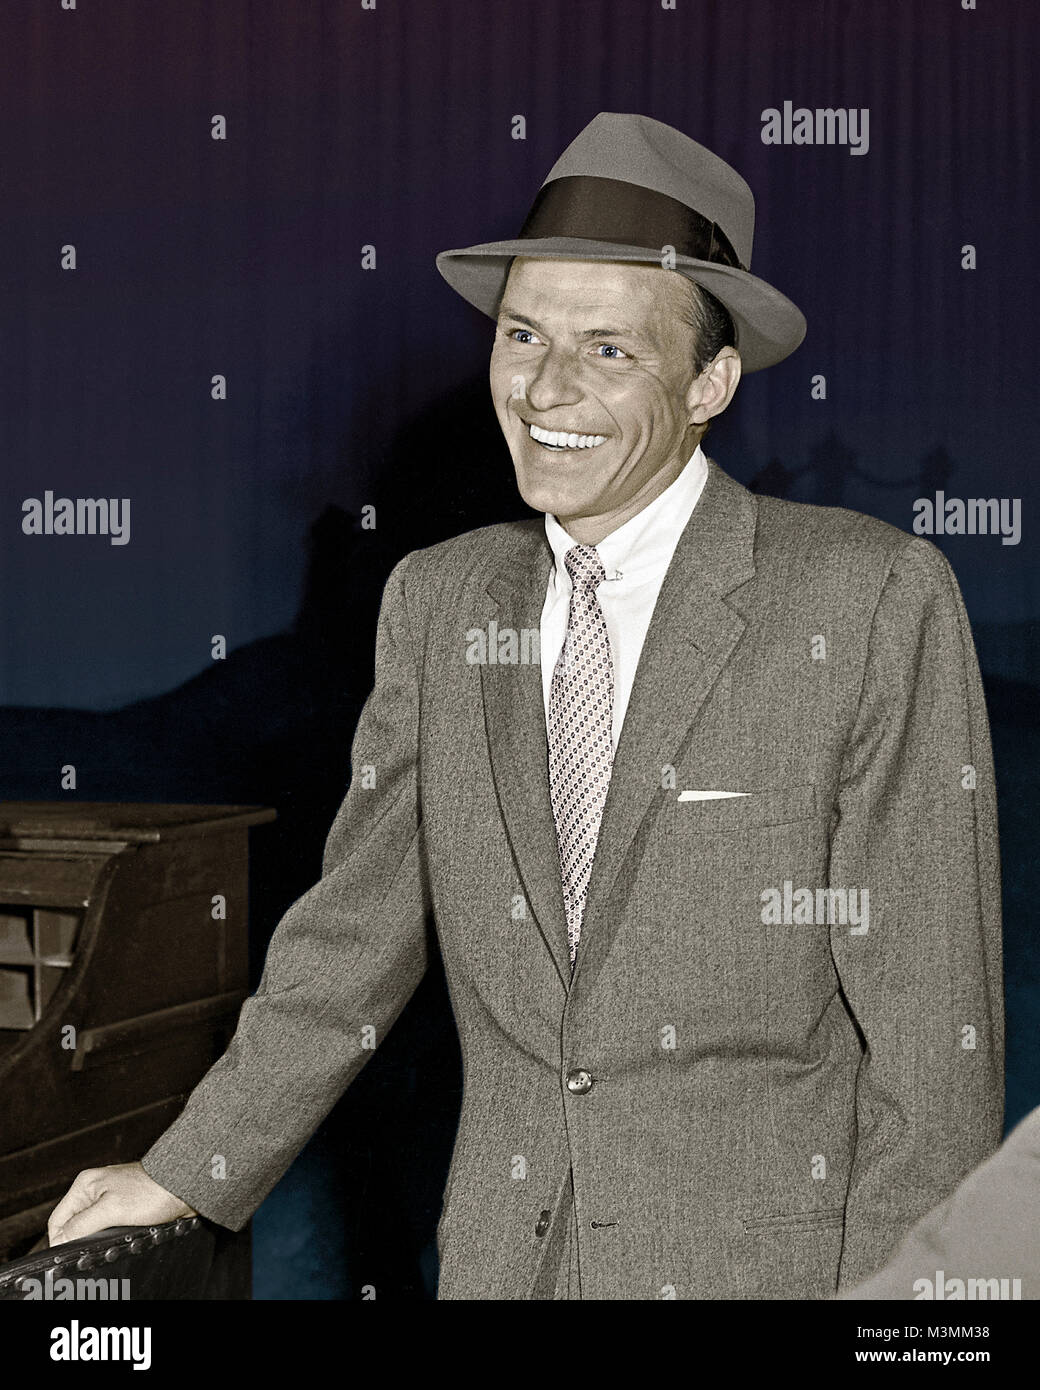 Frank Sinatra sur le tournage de "Notre Ville", 1955. Sinatra a joué le Stage Manager dans cette adaptation musicale du Thornton Wilder jouer. Dans cette production, il a présenté sa chanson bien connue, l'amour et le mariage. Appareil photo originale négative. Banque D'Images